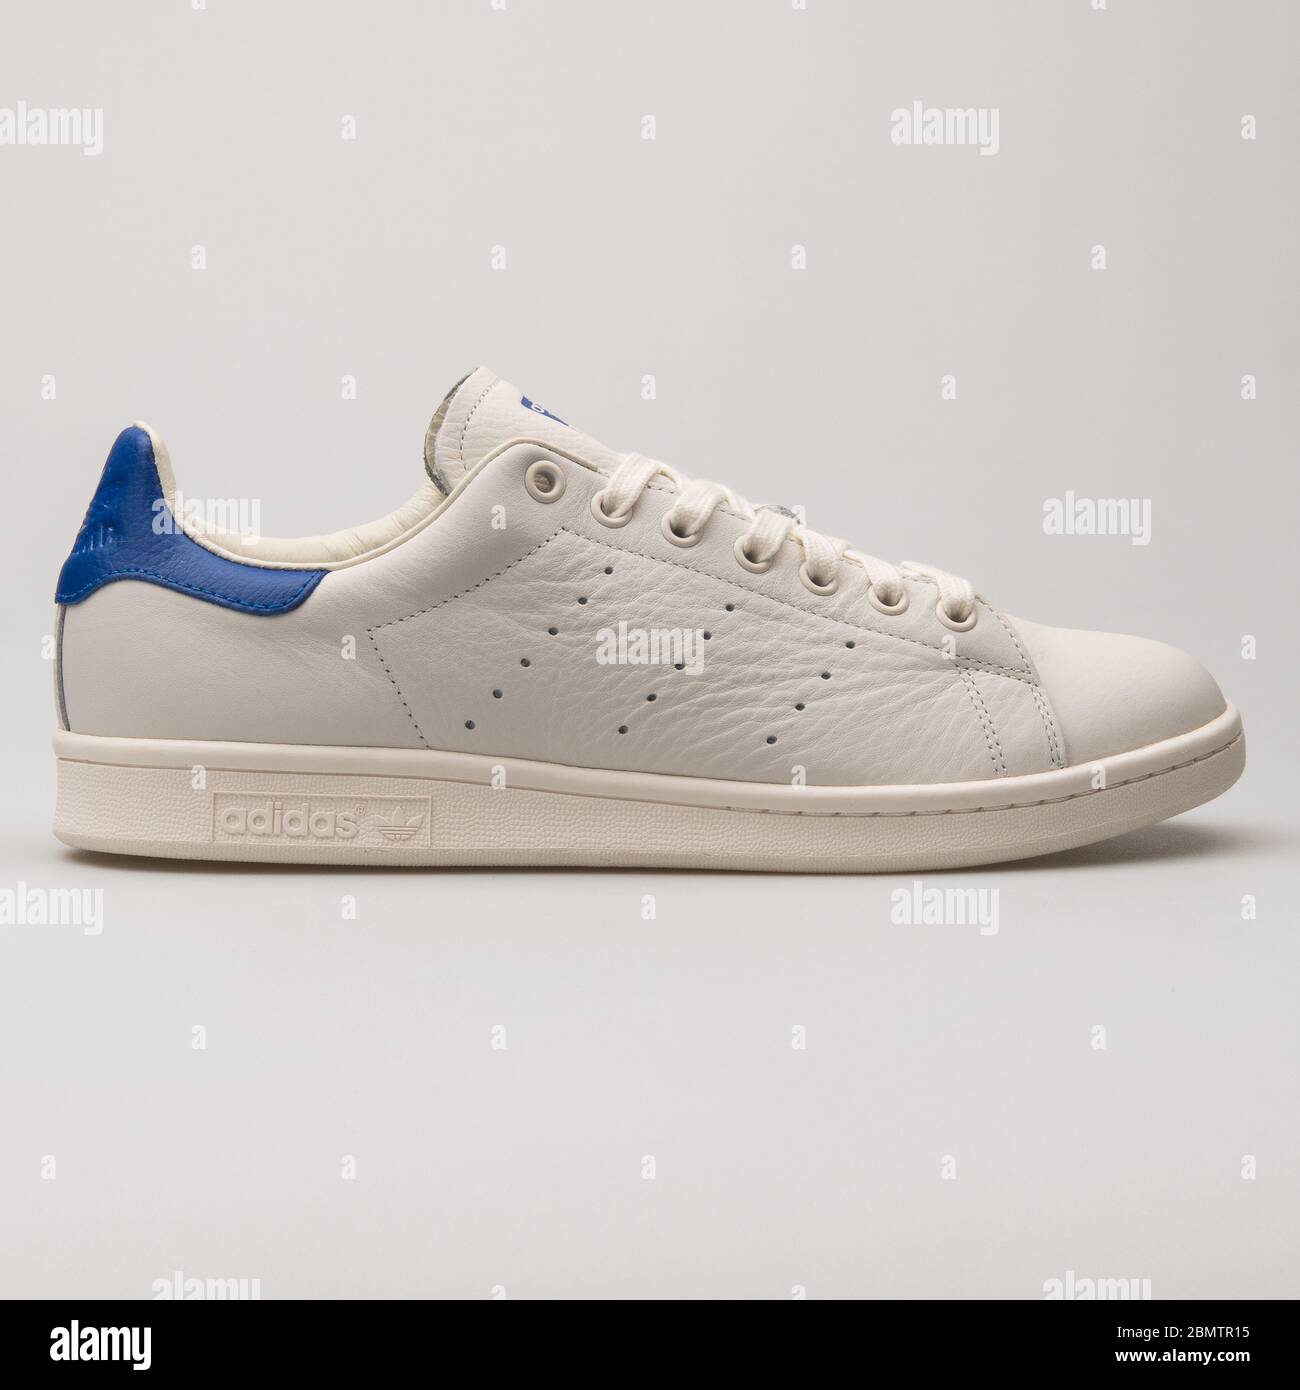 VIENA, AUSTRIA - 27 DE MAYO de 2018: Adidas Stan Smith vintage blanca y azul  sneaker sobre fondo blanco Fotografía de stock - Alamy